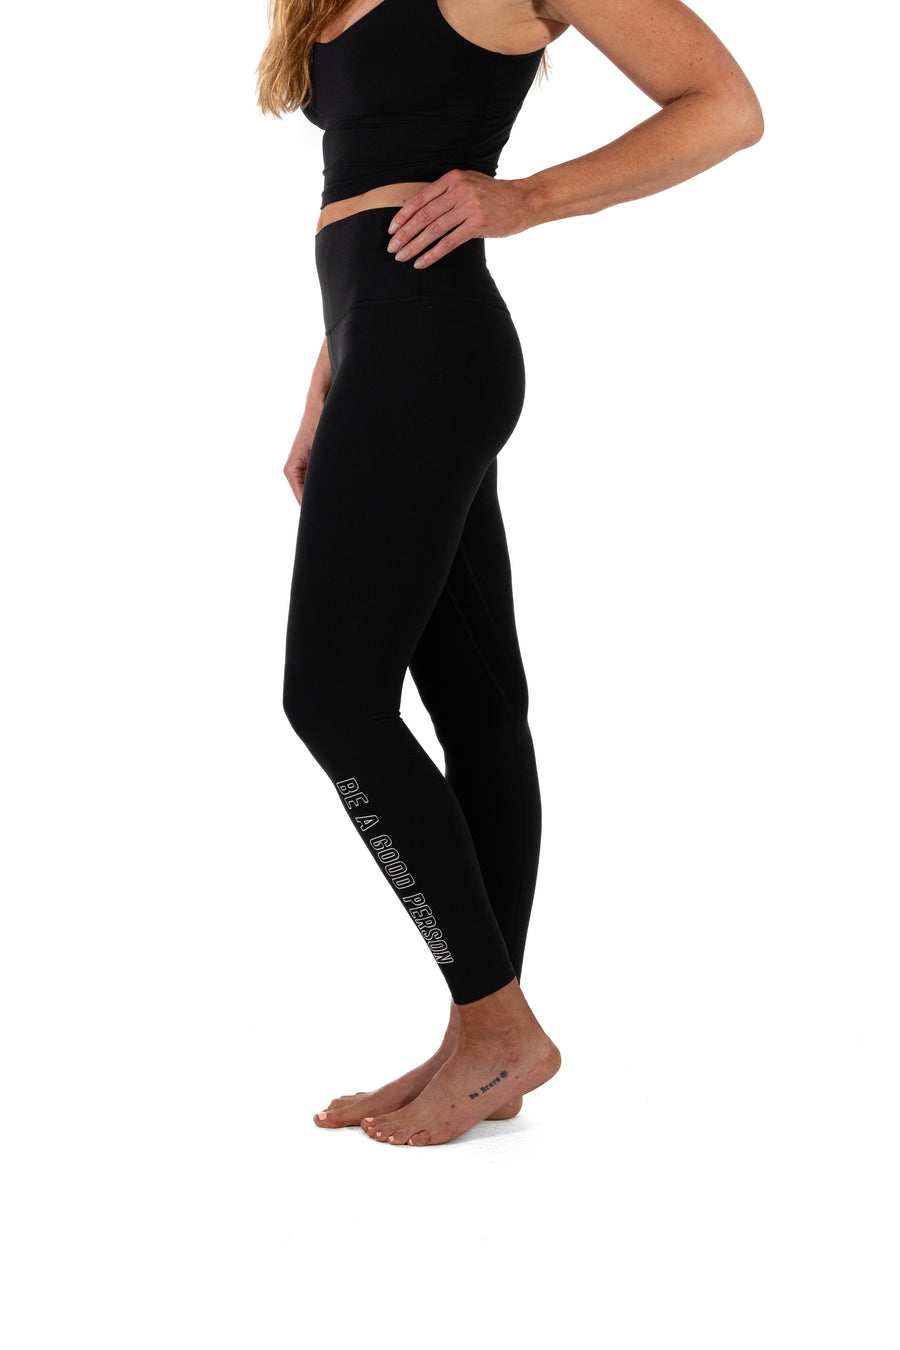 Lululemon Align Yoga Pants Size 8 Black 28 High Rise Leggings